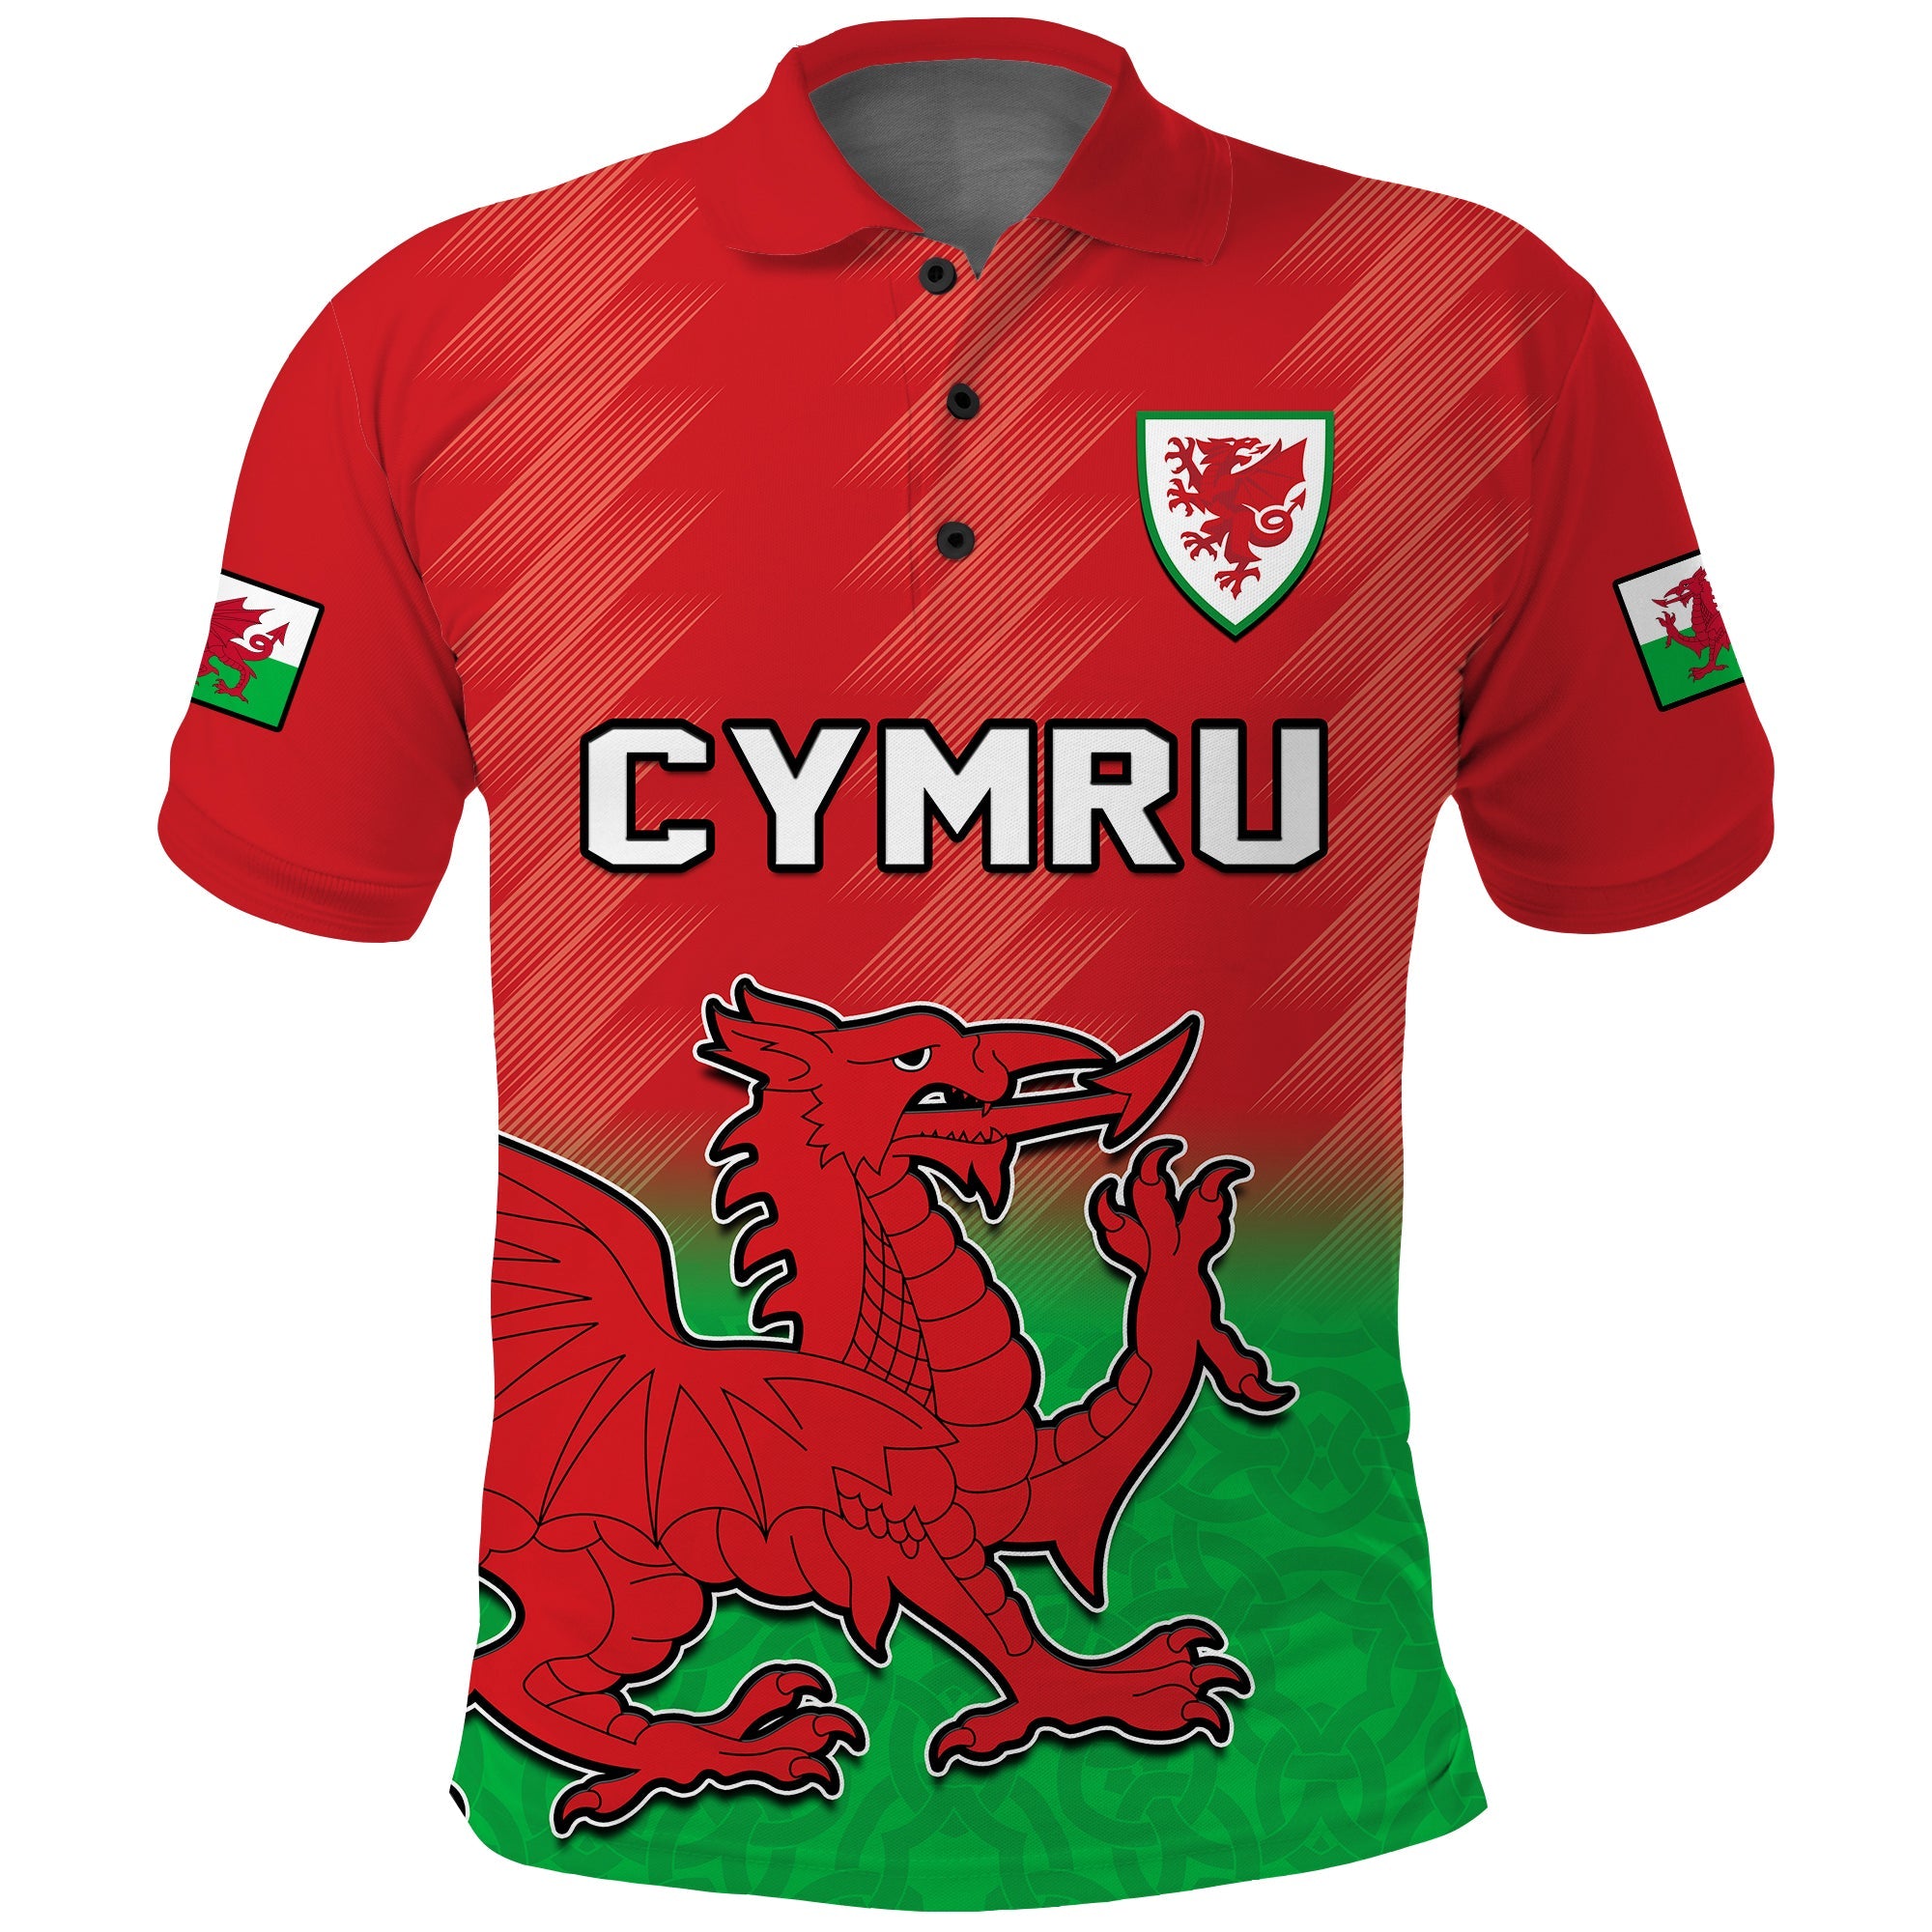 wales-football-polo-shirt-world-cup-2022-come-on-cymru-yma-o-hyd